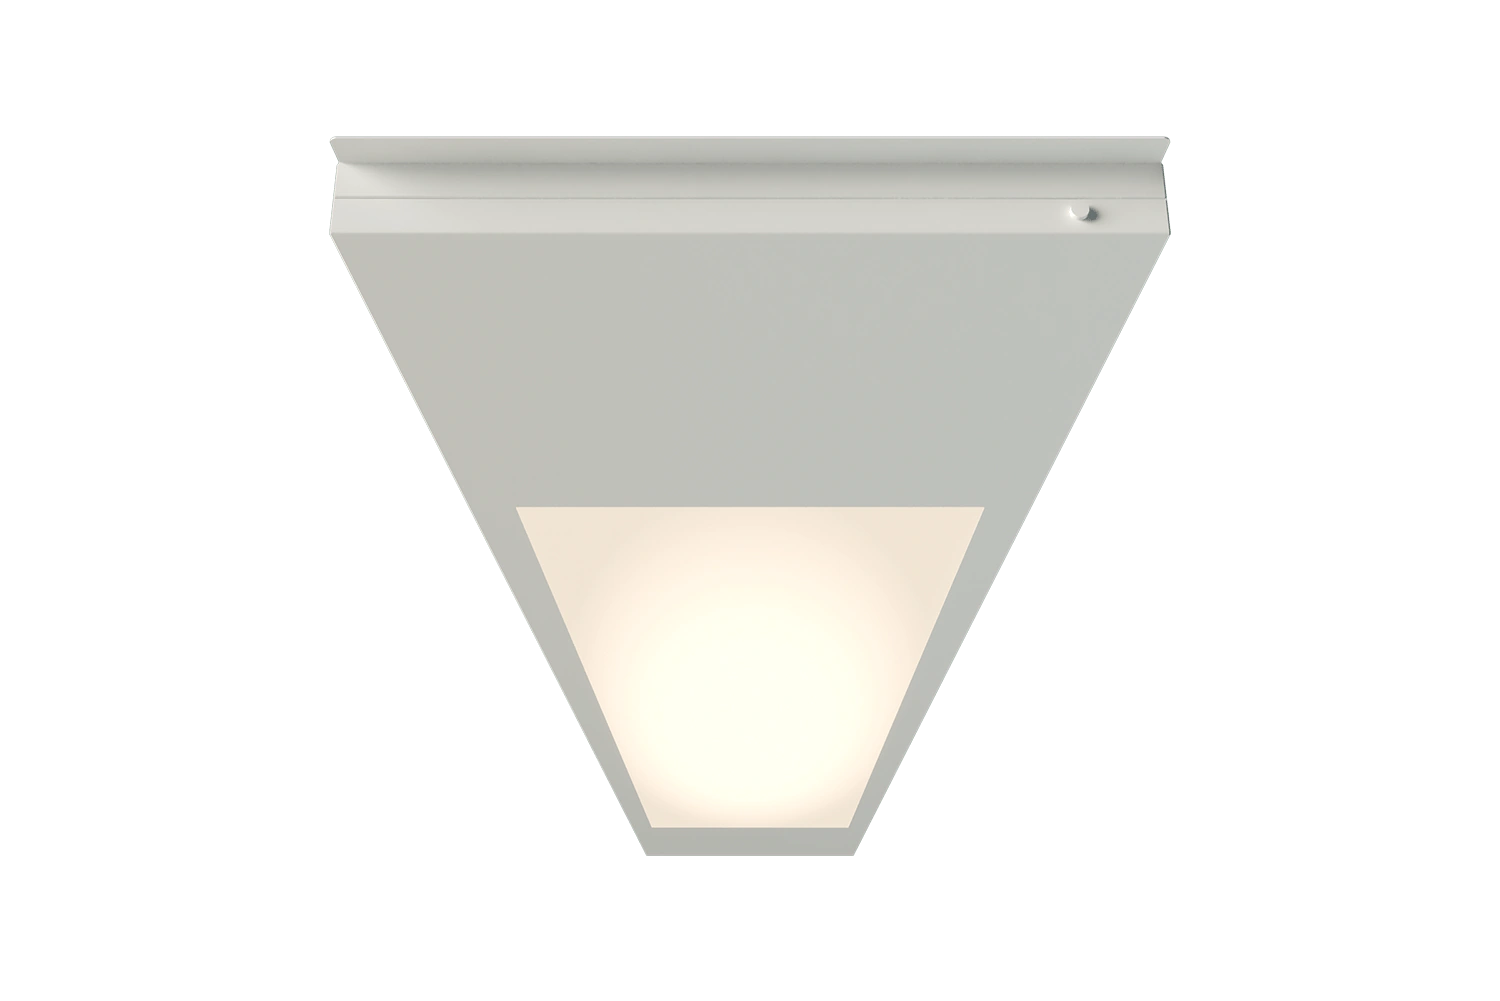 Produktleuchtenbild der Unio 1330 LED Einlegeleuchte